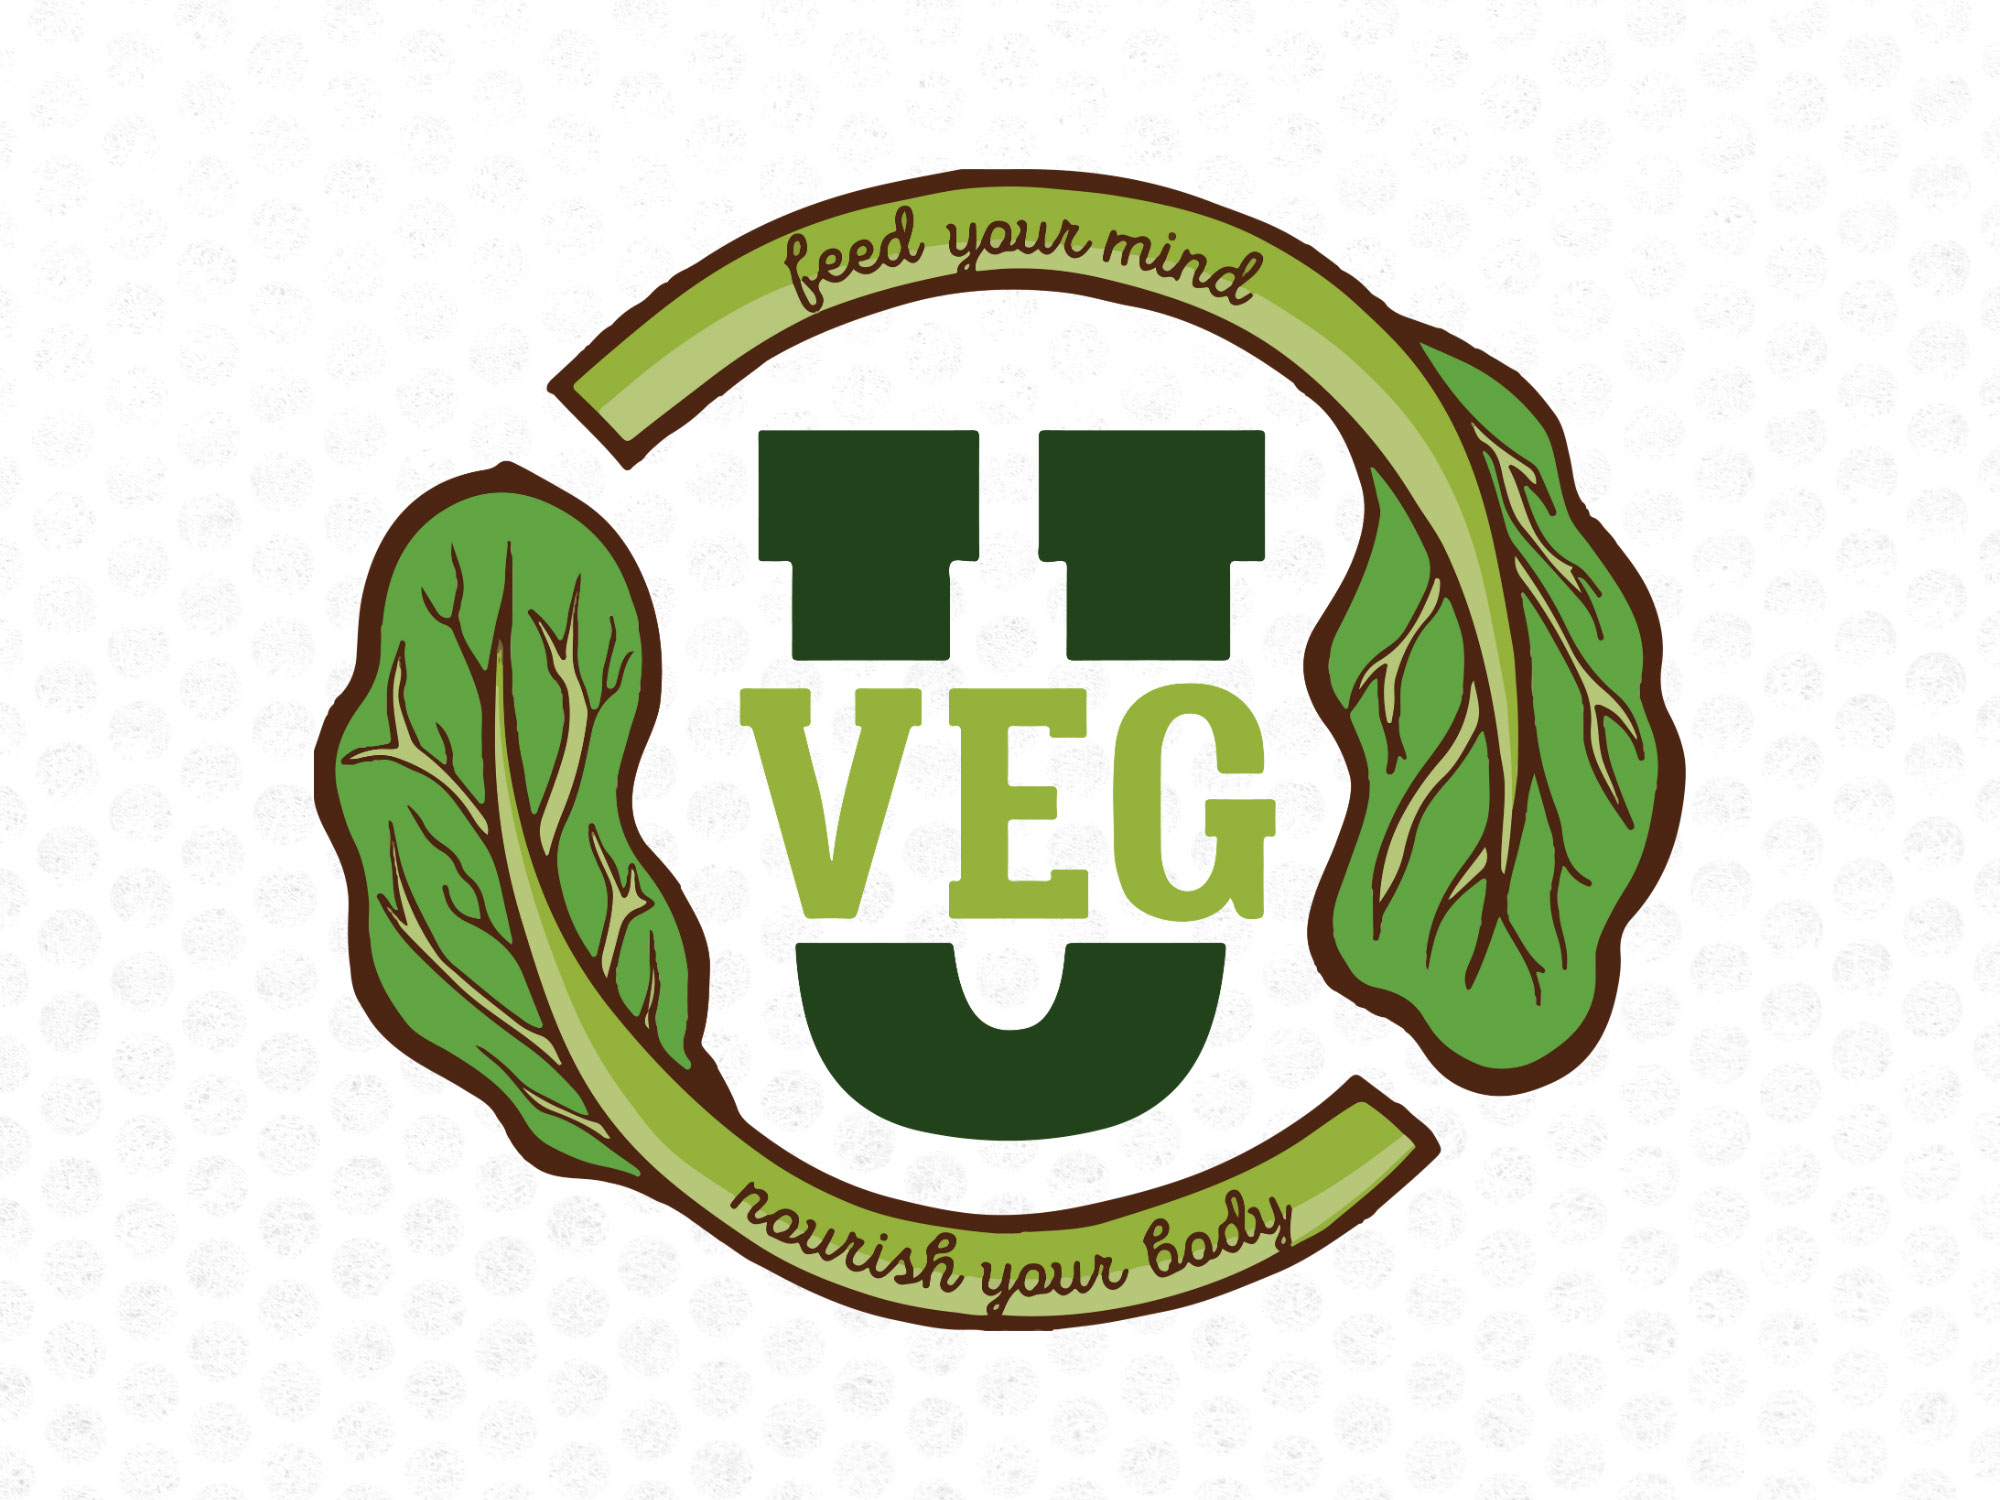 The VegU logo